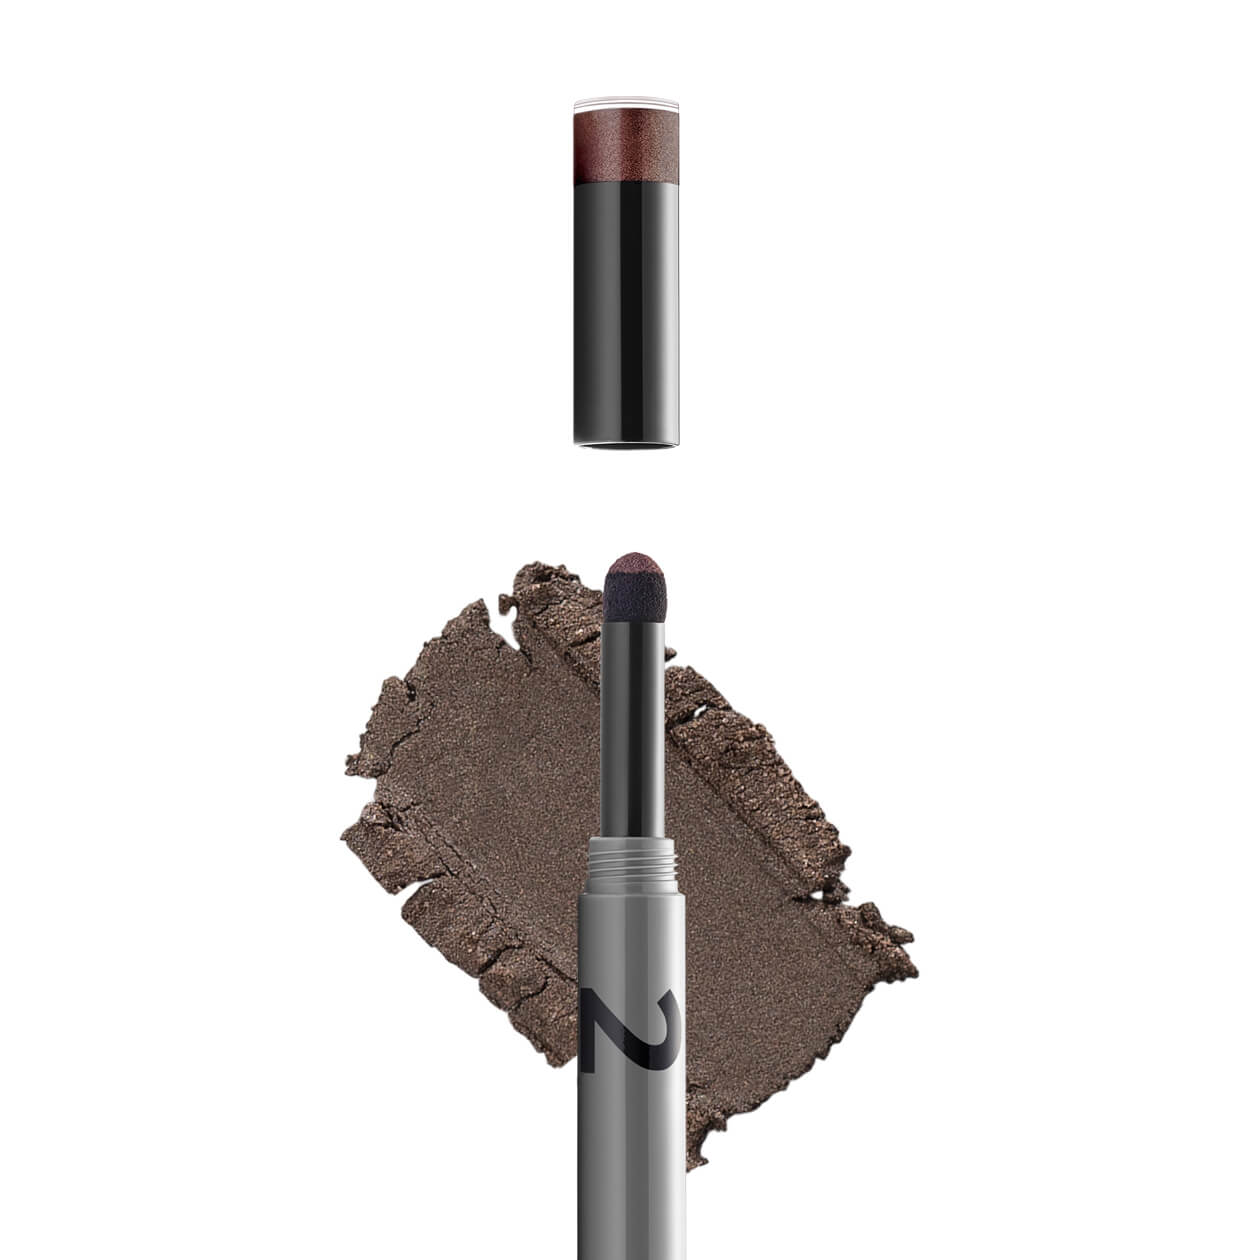 GOKOS - Beauty to go - Indie-Makeup-Brand mit Stiften 108